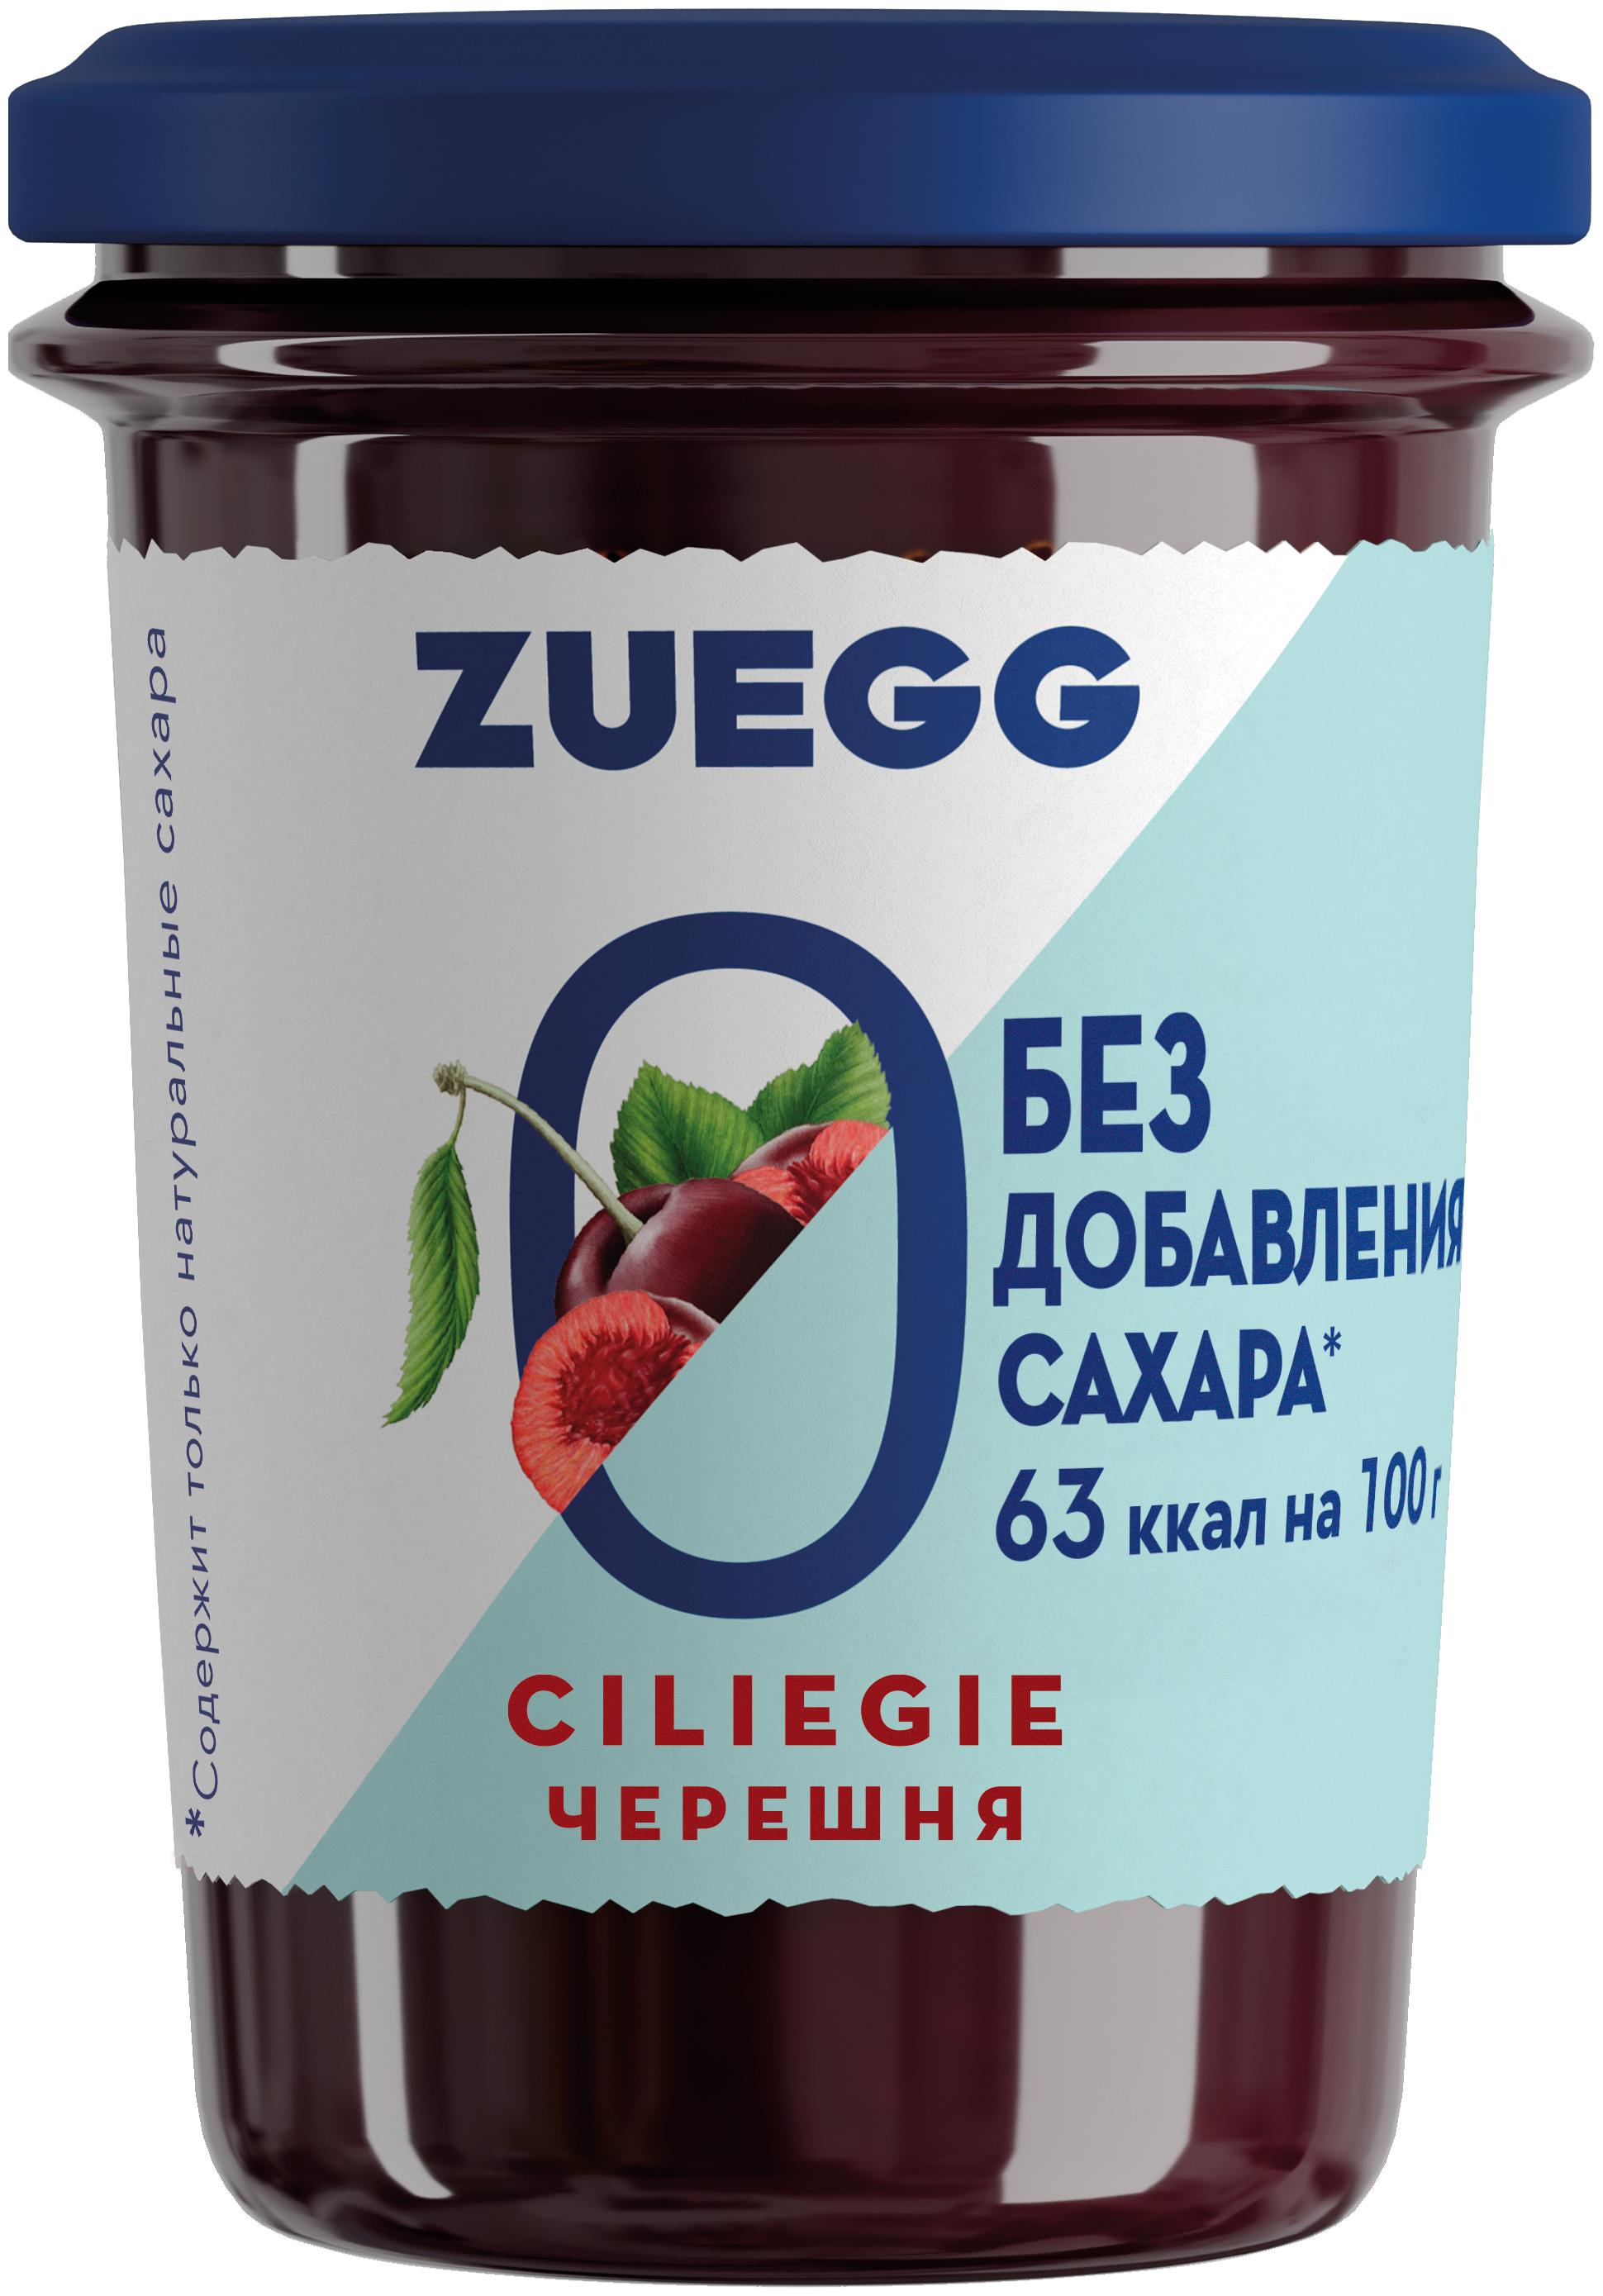 Конфитюр Zuegg   Черешня без сахара, 220 гр., стекло